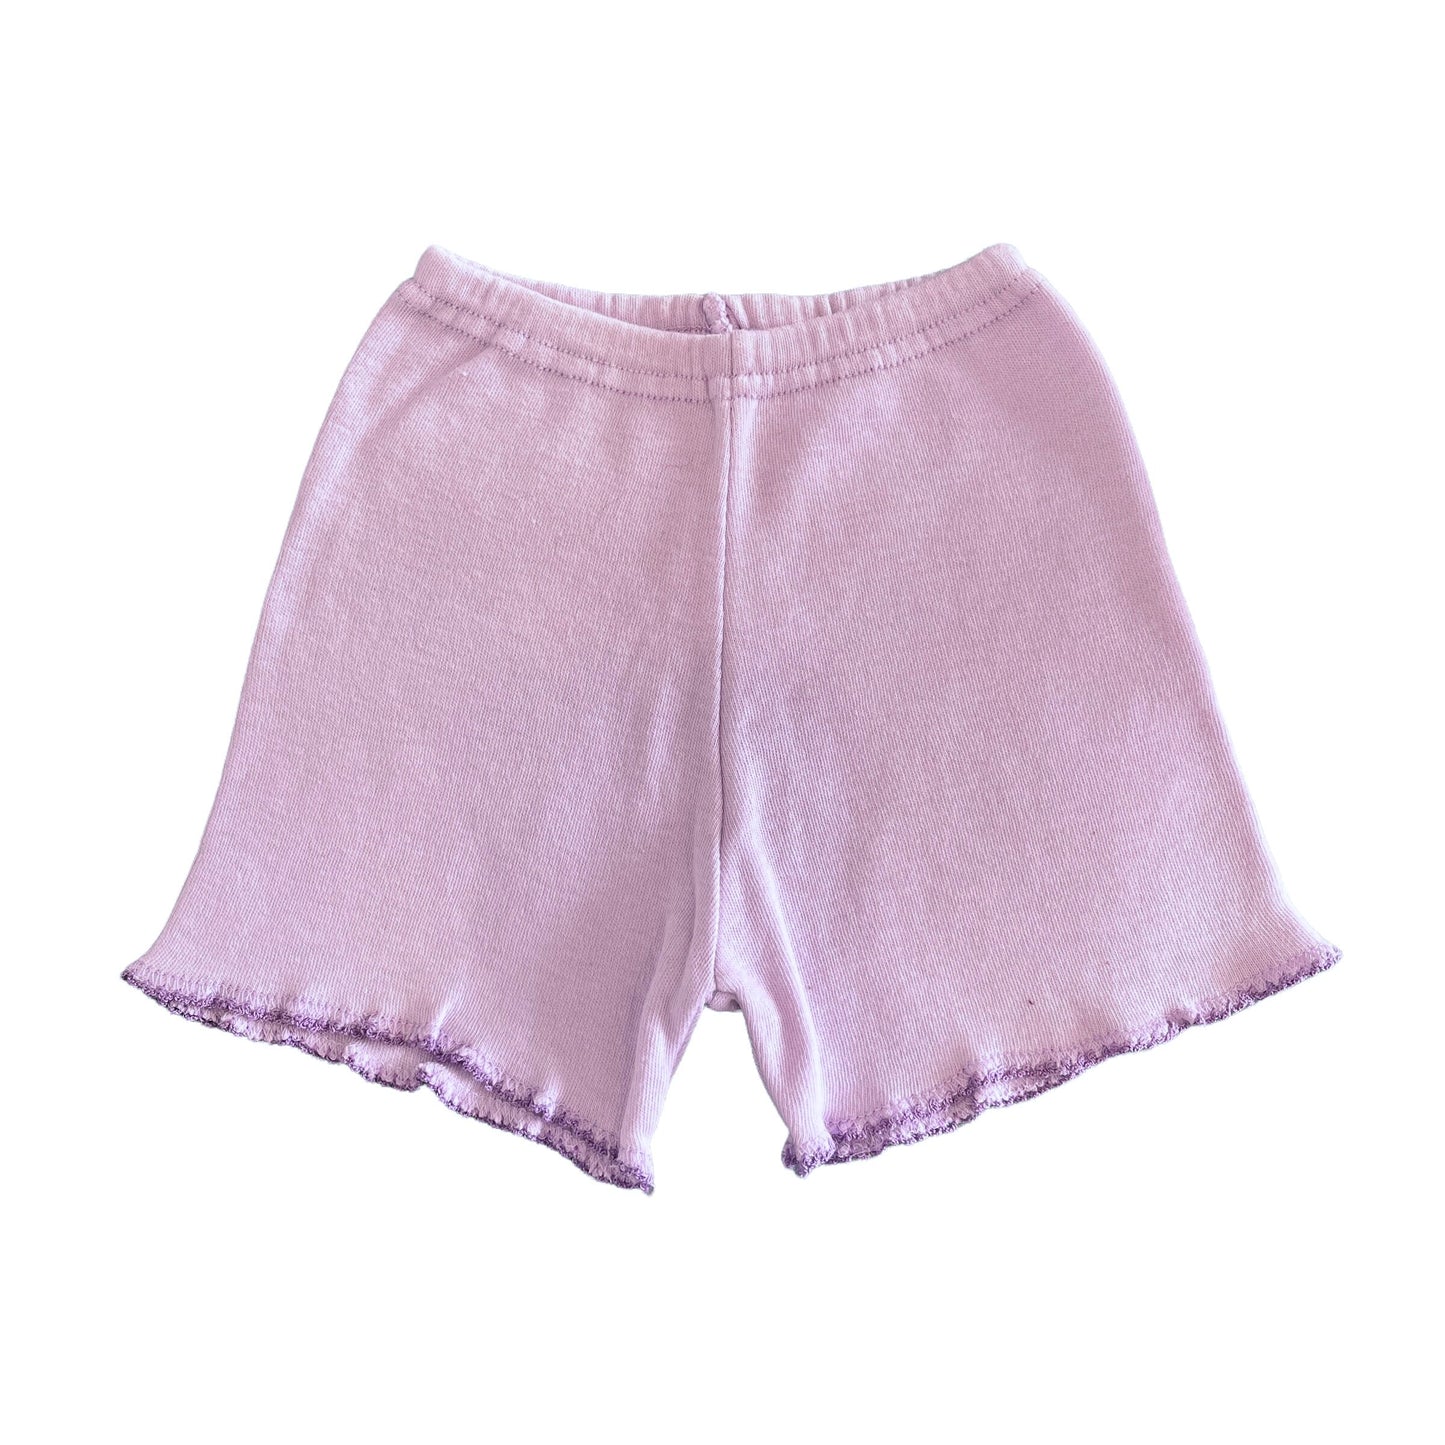 Vintage 70s Baby Light Mauve Shorts / 6-9 Months